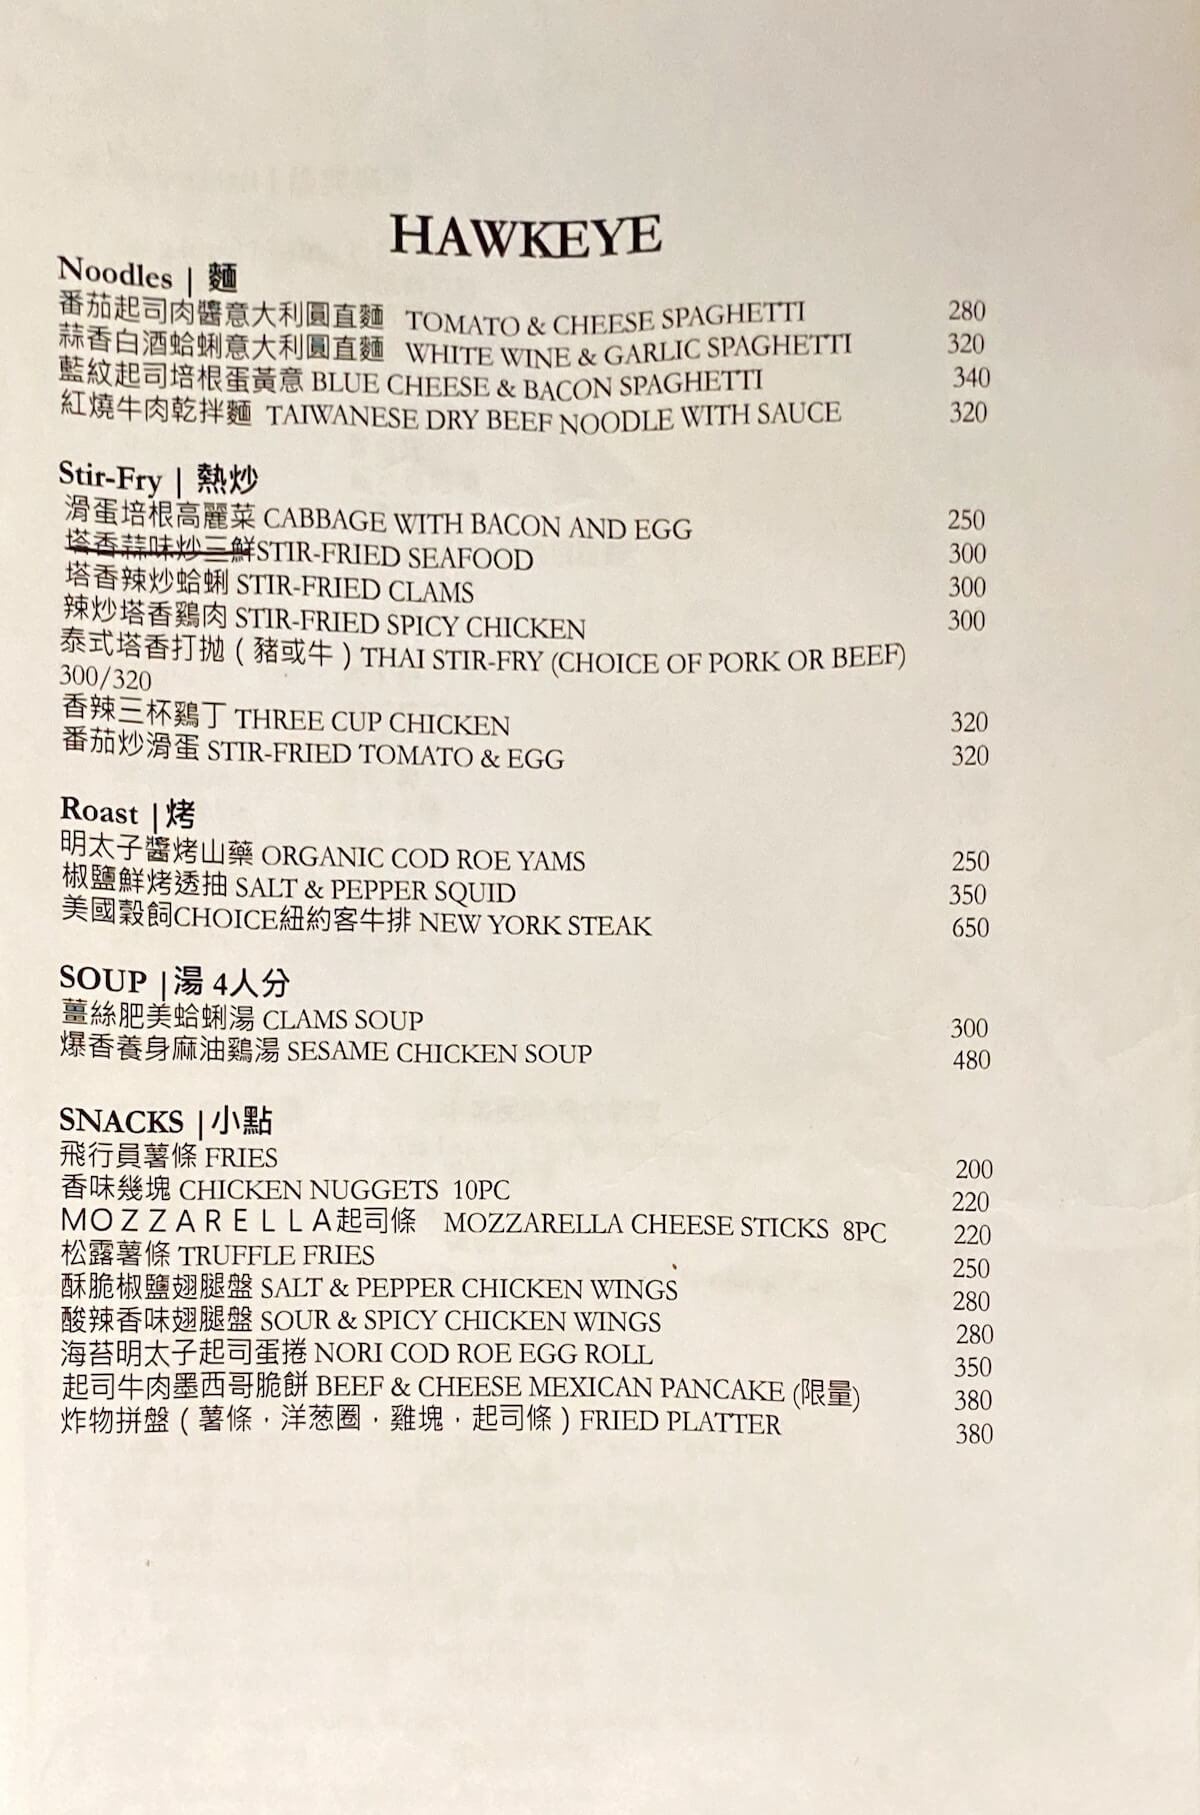 Food menu